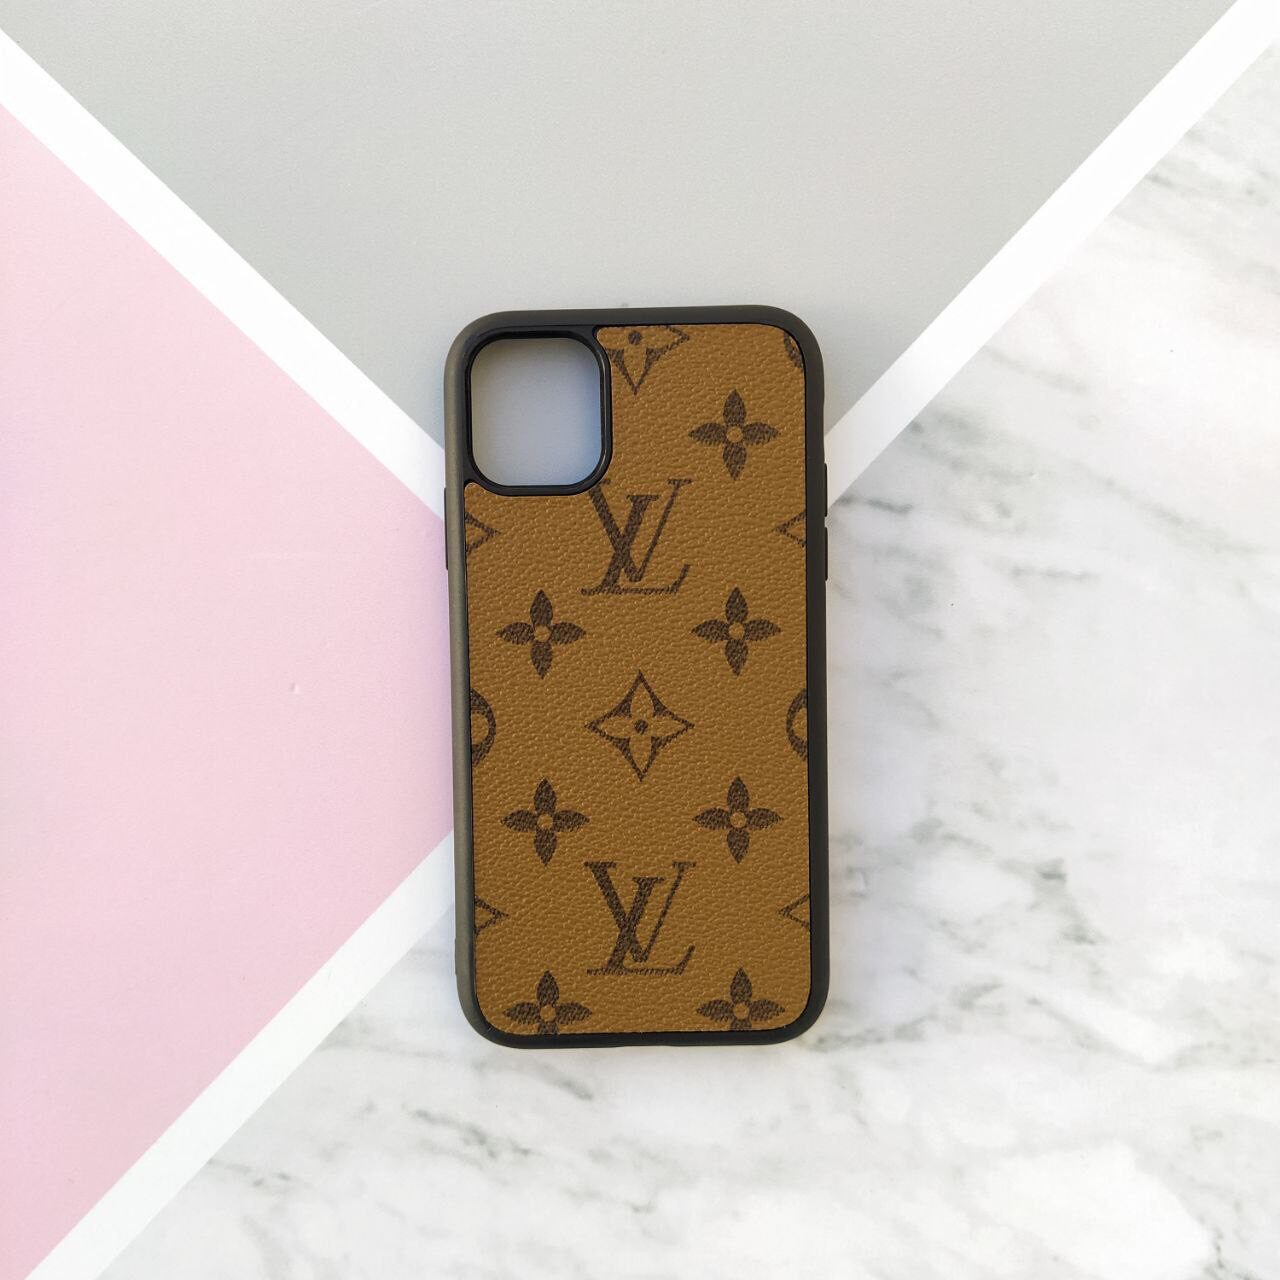 Louis Vuitton tiene sus fundas para iPhone con un diseño muy original